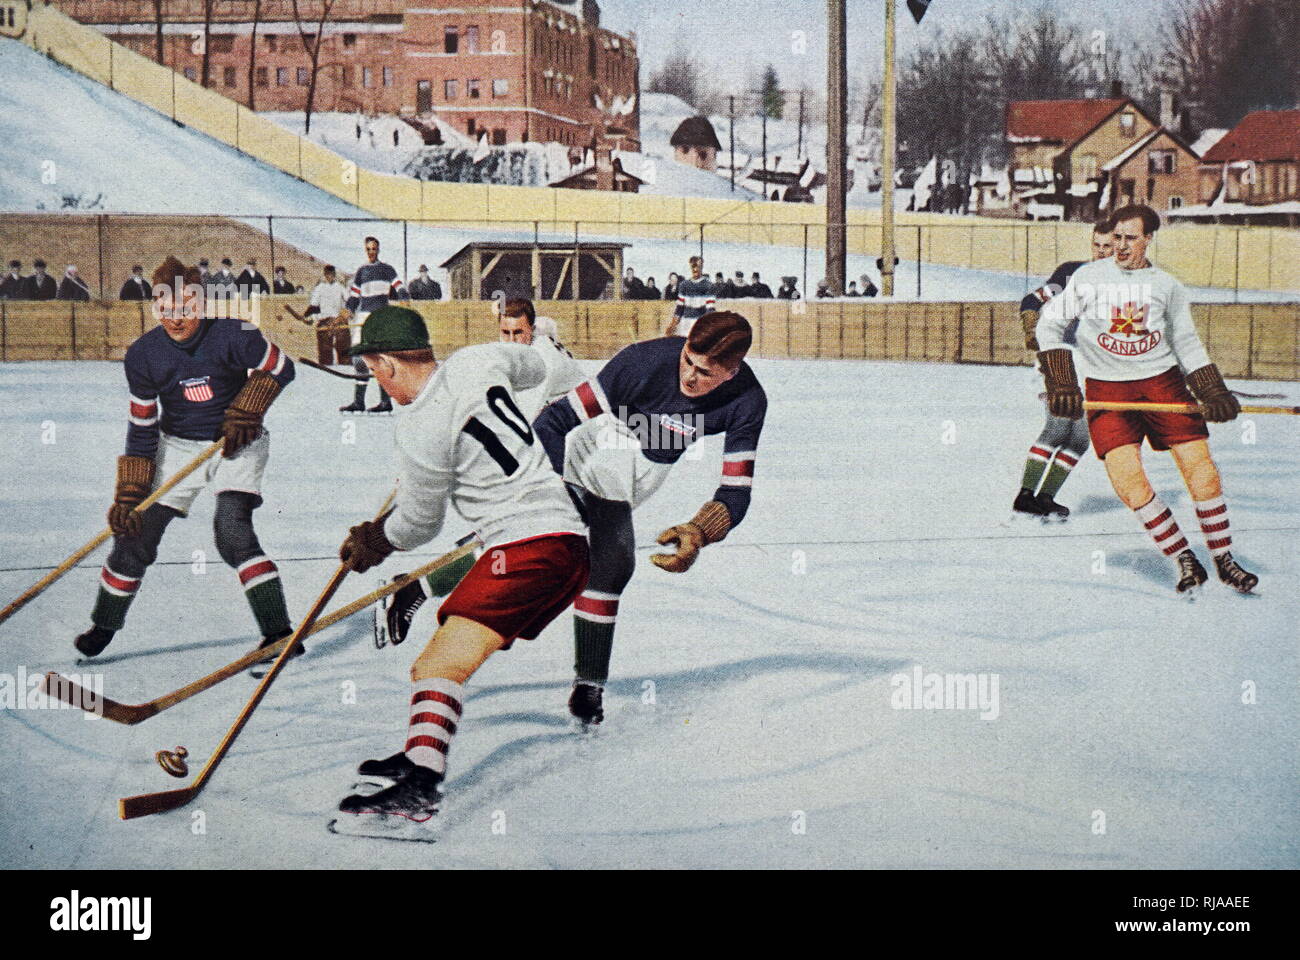 Foto von Kanada Vs. Amerika in den Ice Hockey bei den Olympischen Winterspielen 1932. Kanada gewann Gold während Amerika zweite Silber unter kam. Stockfoto